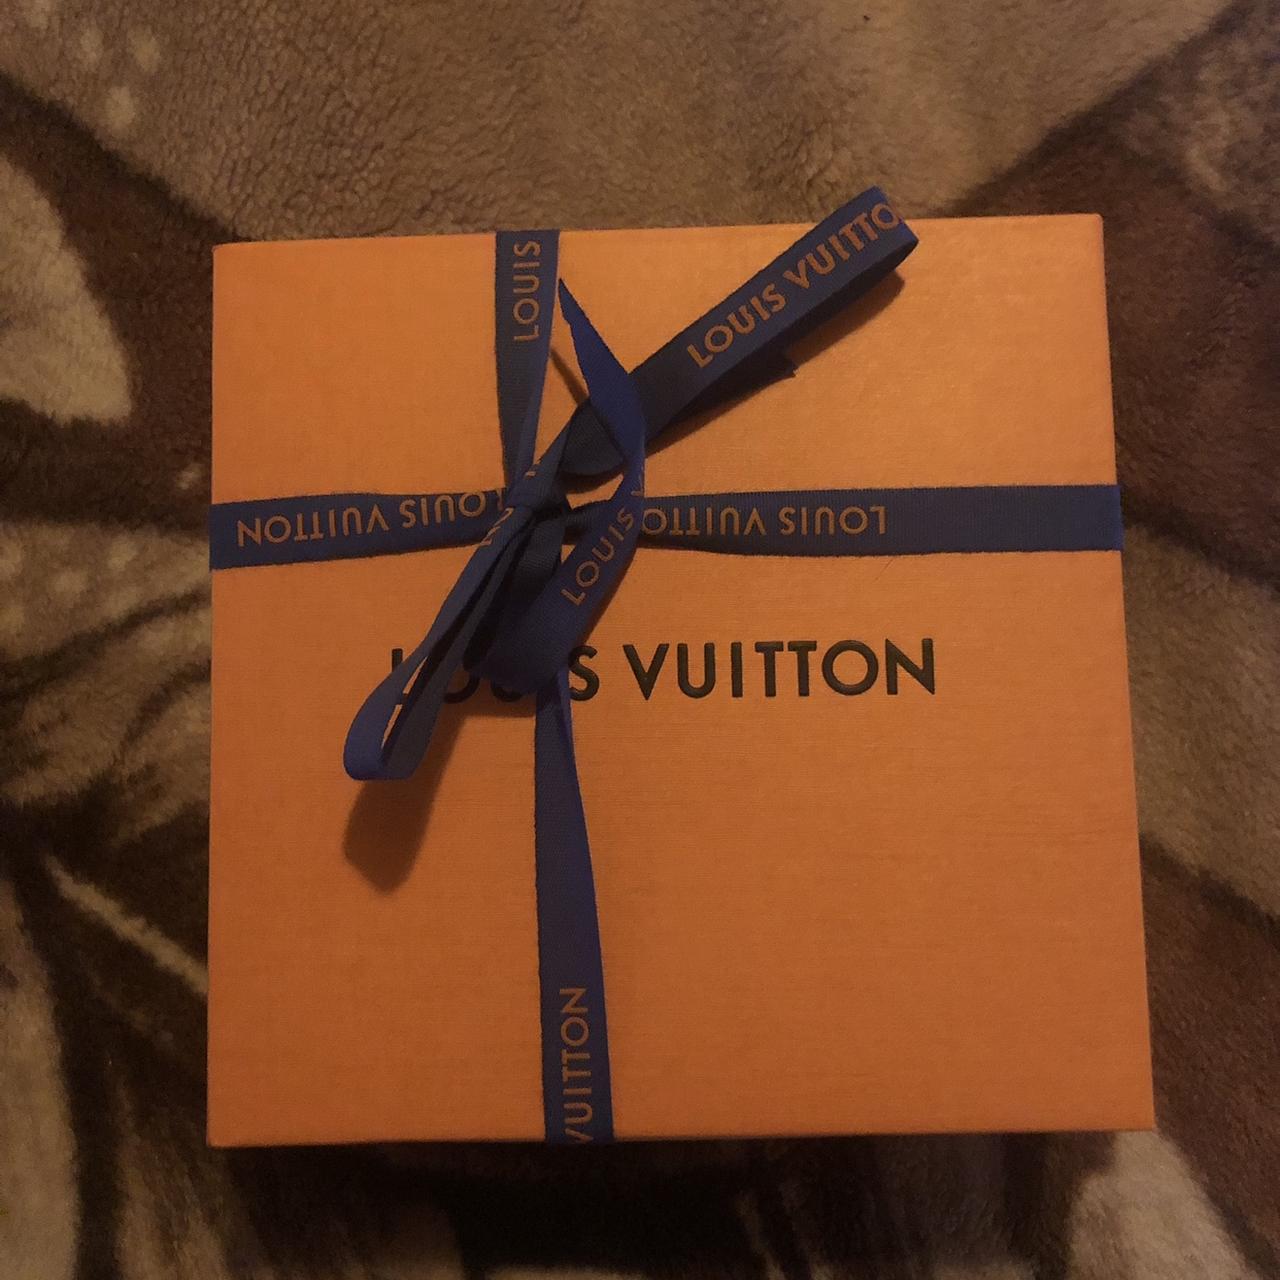 Drops LOUIS VUITTON on X: Louis Vuitton Prism Belt by @virgilabloh  Releasing late 2019  / X